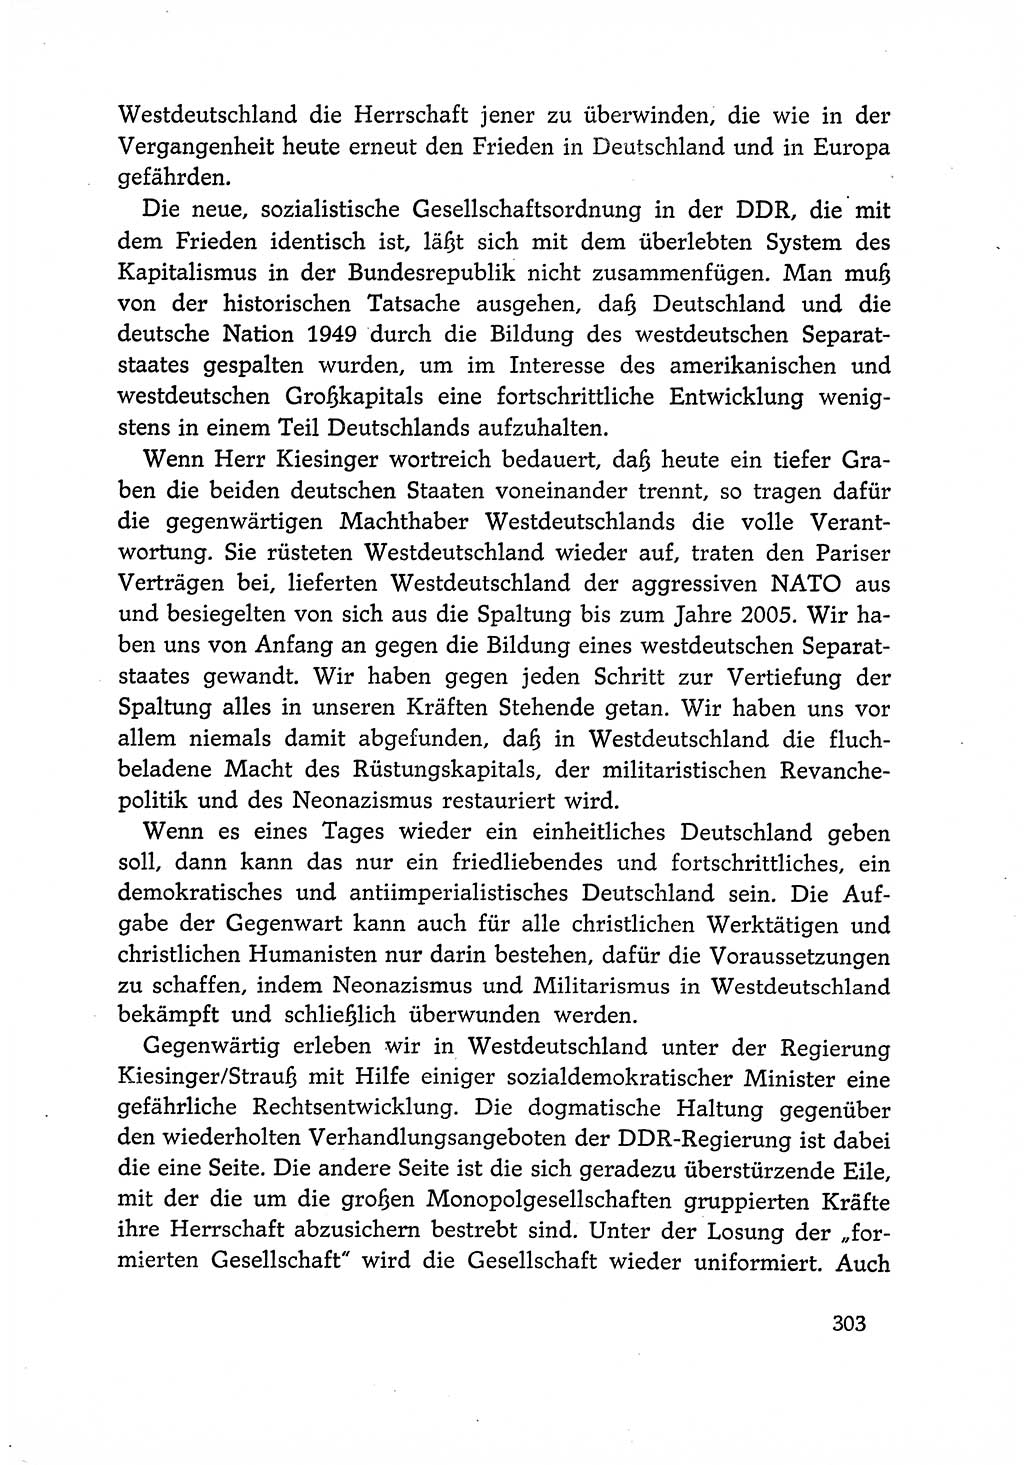 Dokumente der Sozialistischen Einheitspartei Deutschlands (SED) [Deutsche Demokratische Republik (DDR)] 1966-1967, Seite 303 (Dok. SED DDR 1966-1967, S. 303)